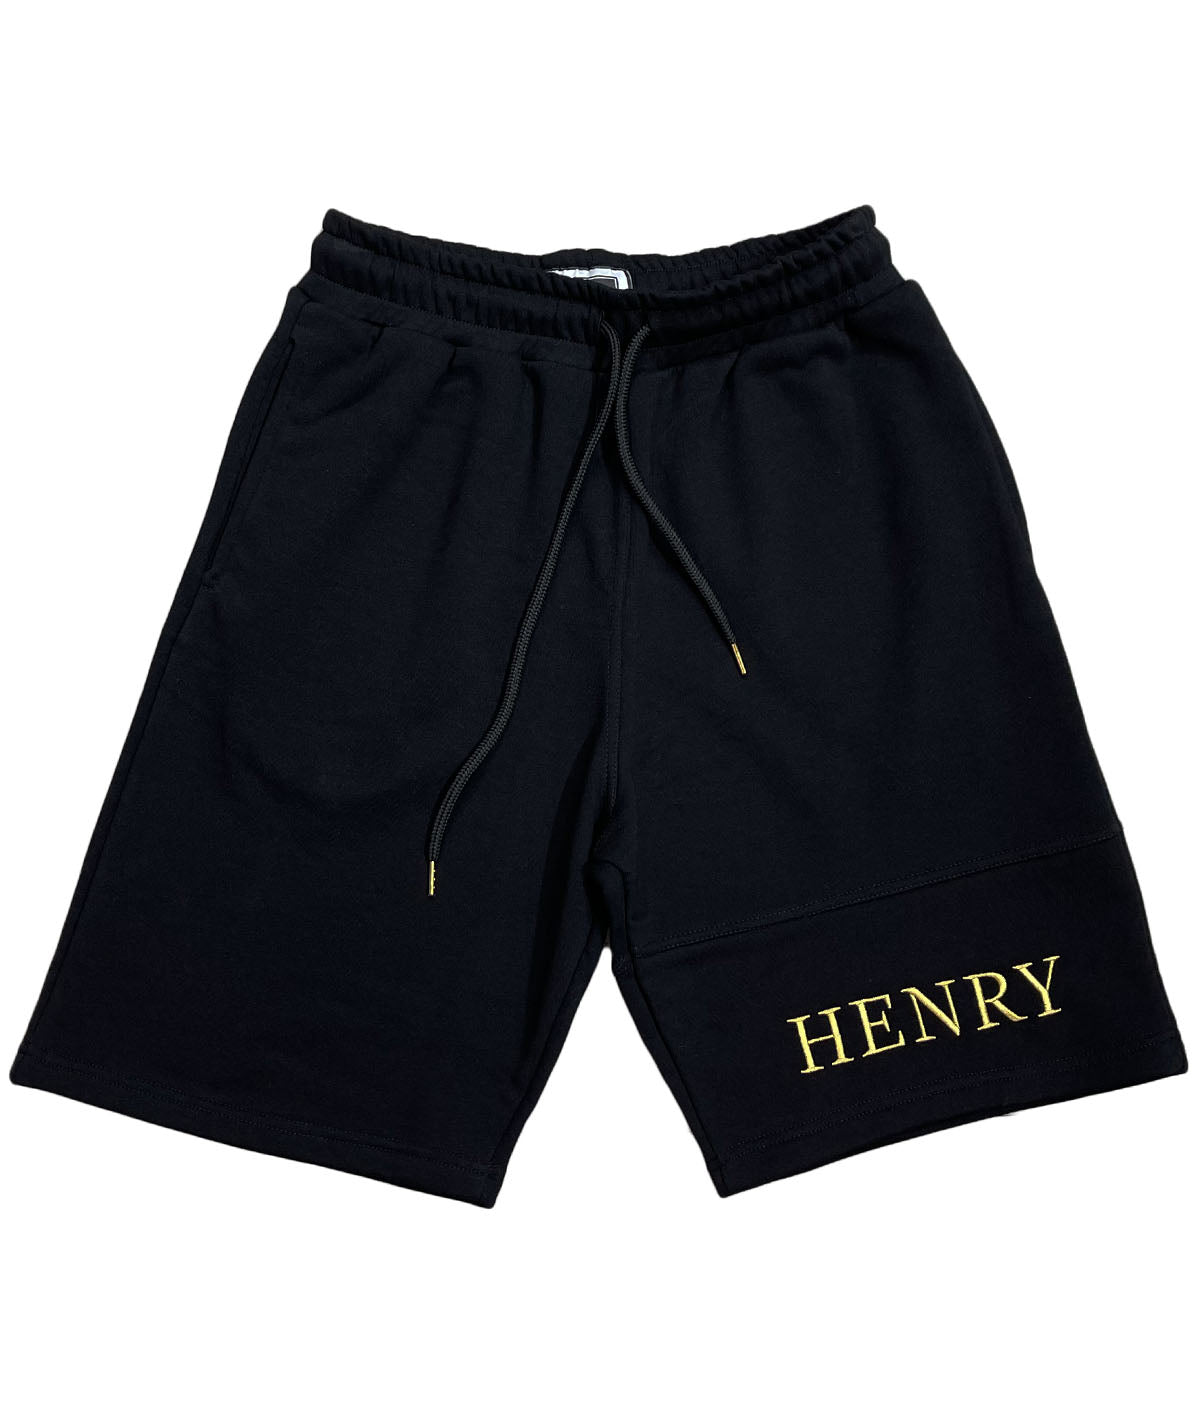 Ανδρική αθλητική βερμούδα HENRY CLOTHING BLACK GOLD CENTER LOGO SHORTS (6696093319332)